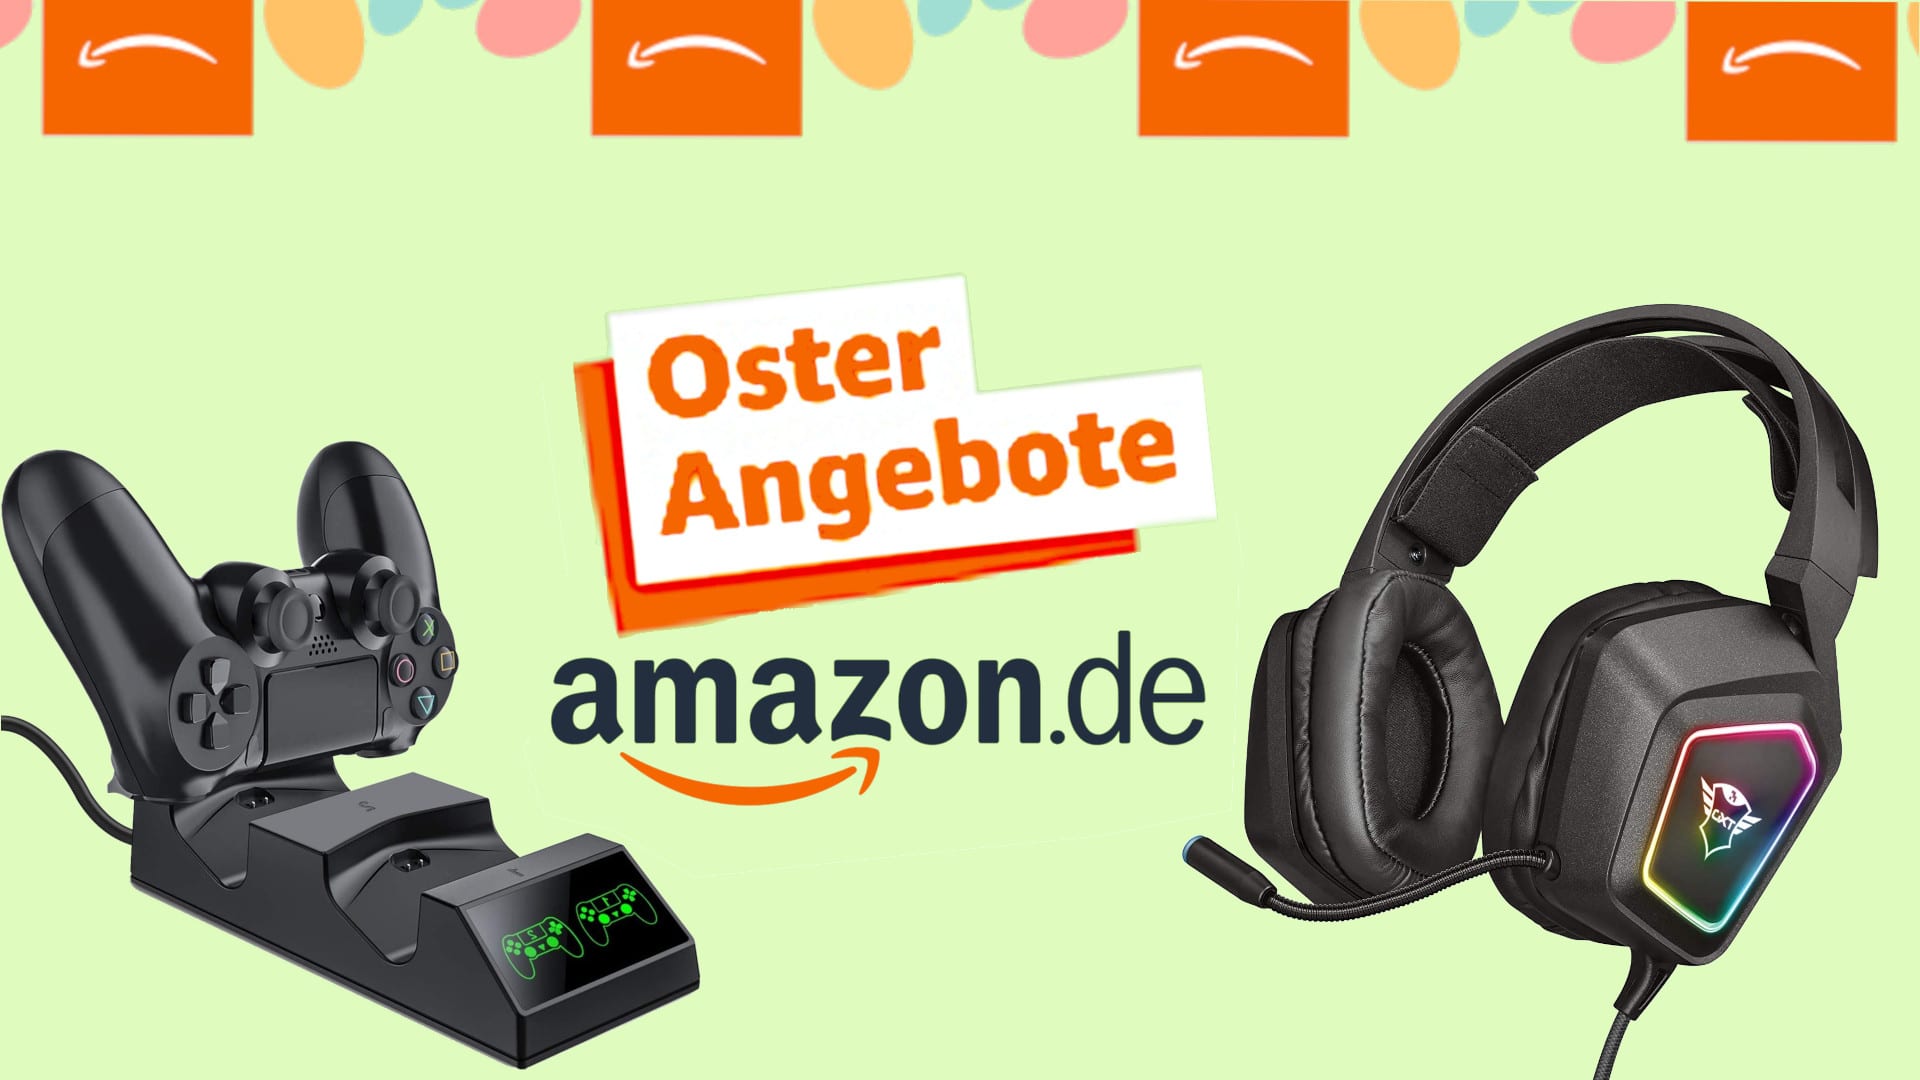 Oster-Angebote bei Amazon: Sparen auf Gaming-Zubehör, nur kurze Zeit!